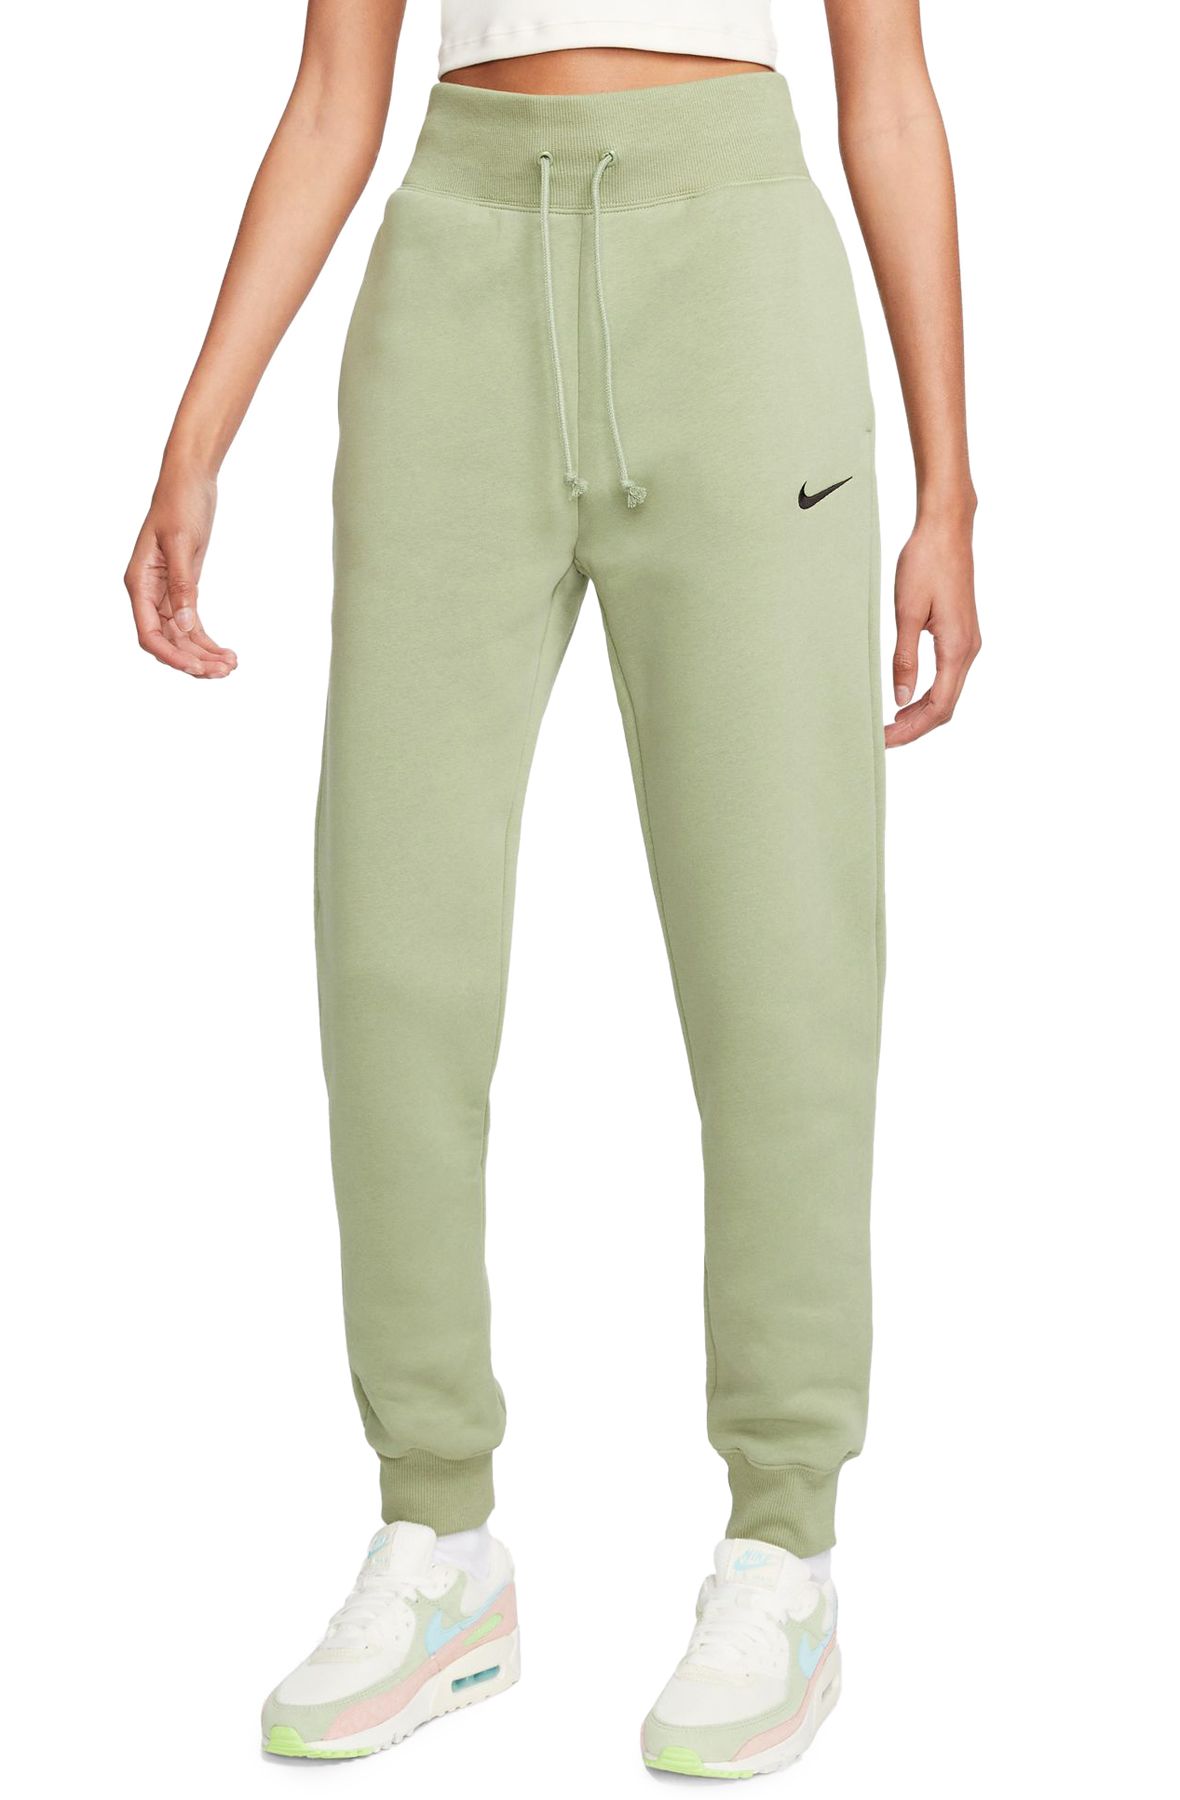 Nike Women's Sportswear Phoenix Fleece High-Waisted Joggers Grey Size M 